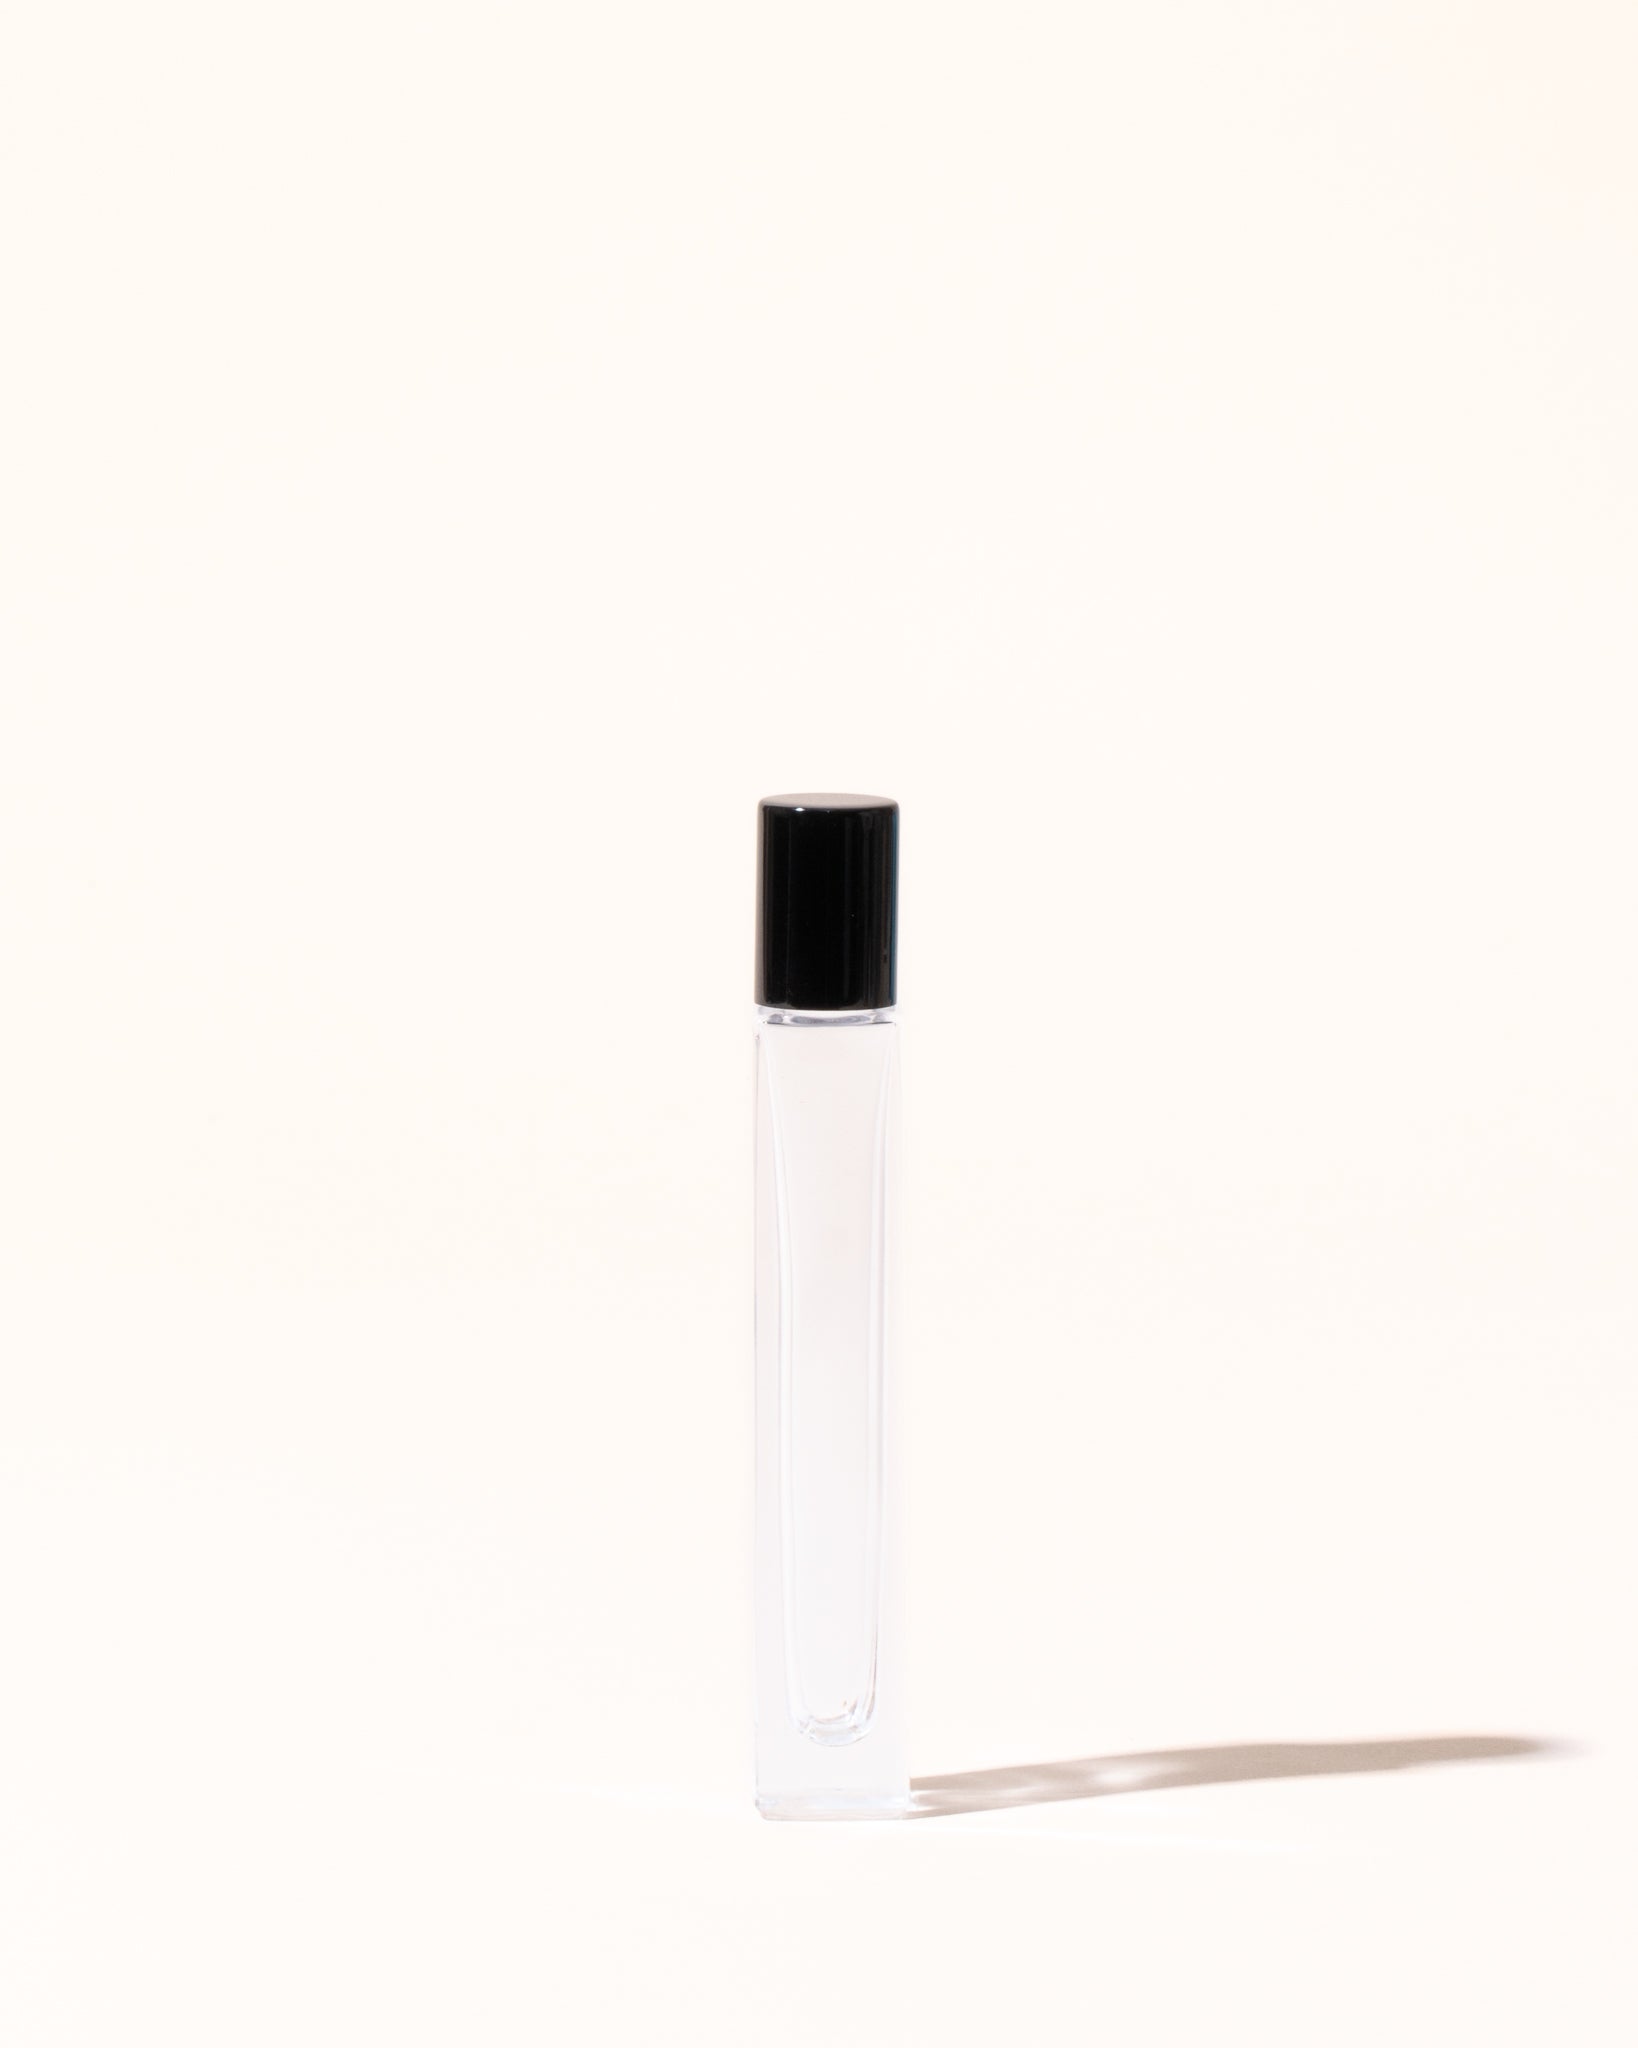 0.33 oz aspen rollerball perfume bottle